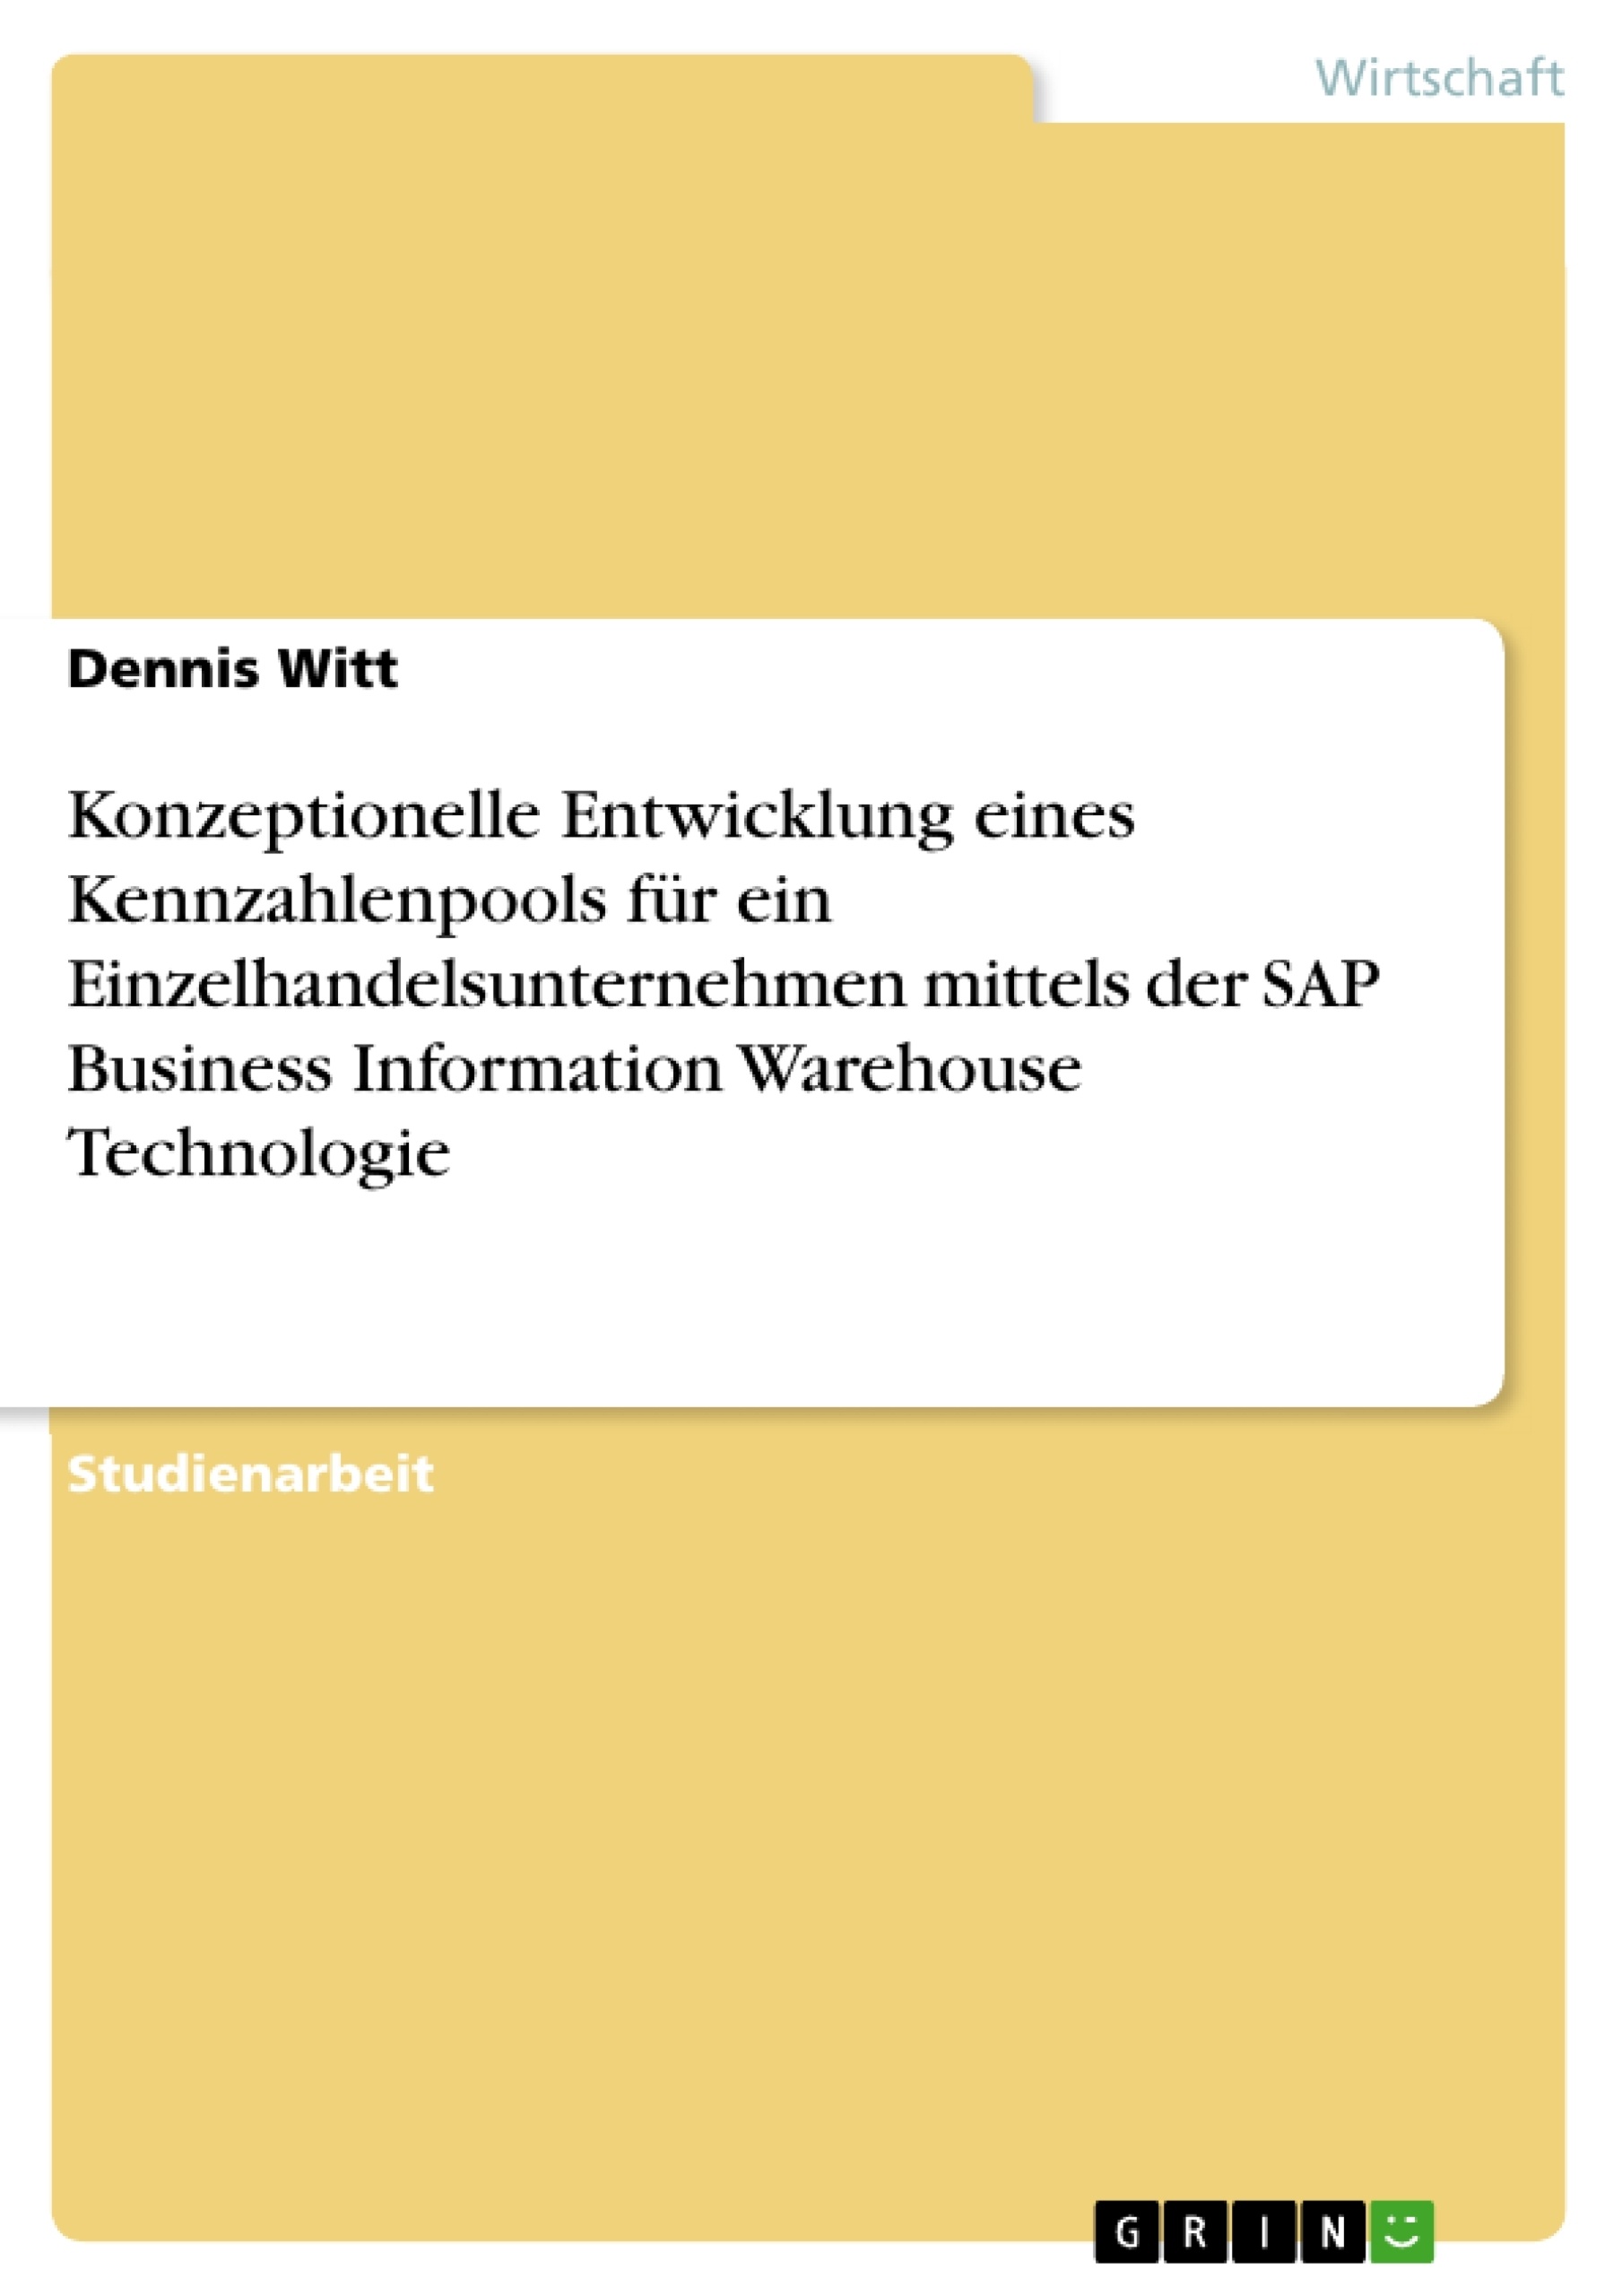 Title: Konzeptionelle Entwicklung eines Kennzahlenpools für ein Einzelhandelsunternehmen mittels der SAP Business Information Warehouse Technologie